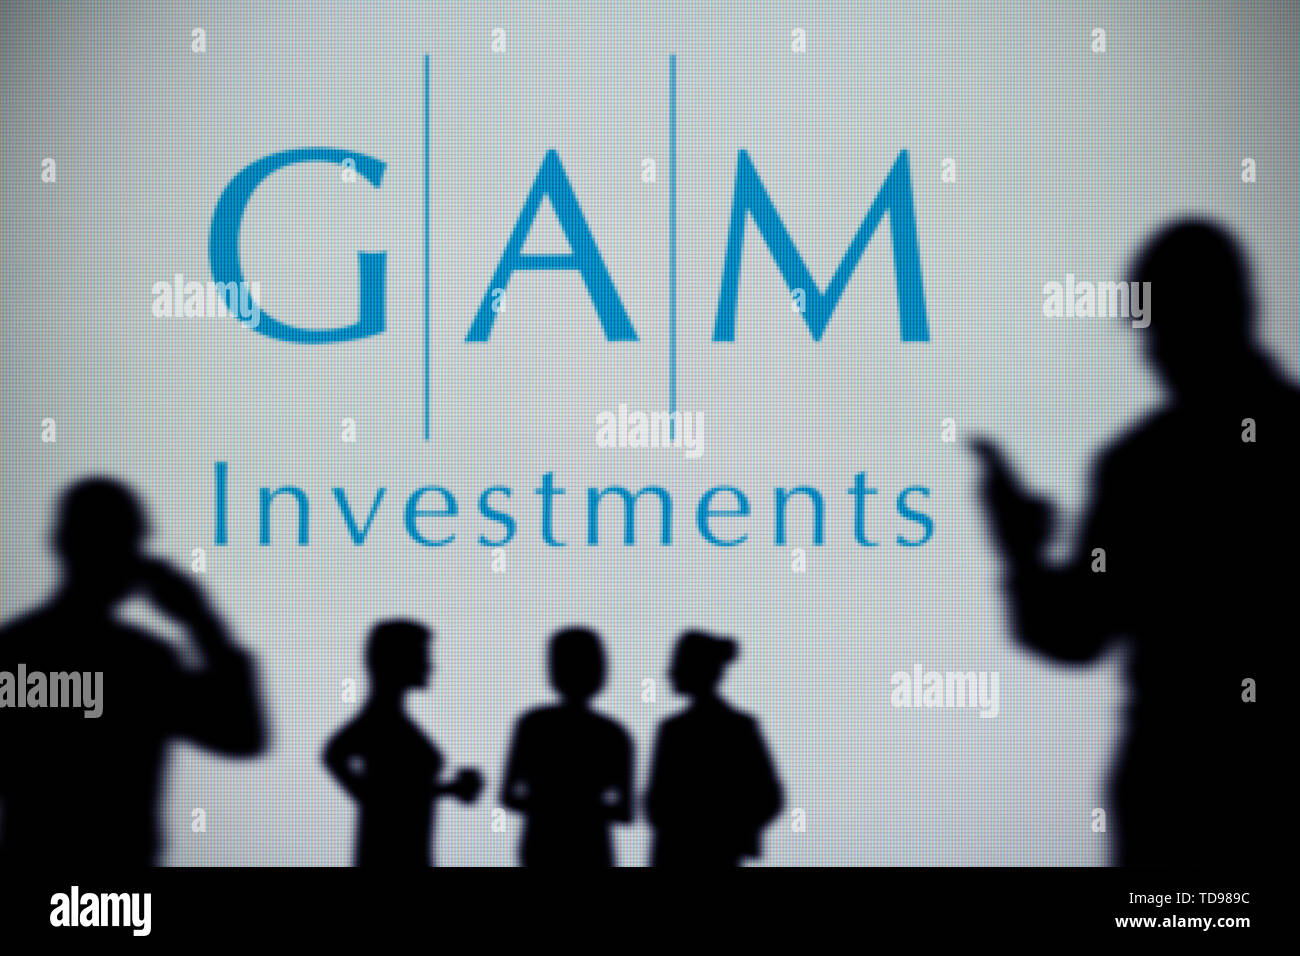 La GAM investimenti logo è visibile su uno schermo a LED in background mentre si profila una persona utilizza uno smartphone in primo piano (solo uso editoriale Foto Stock